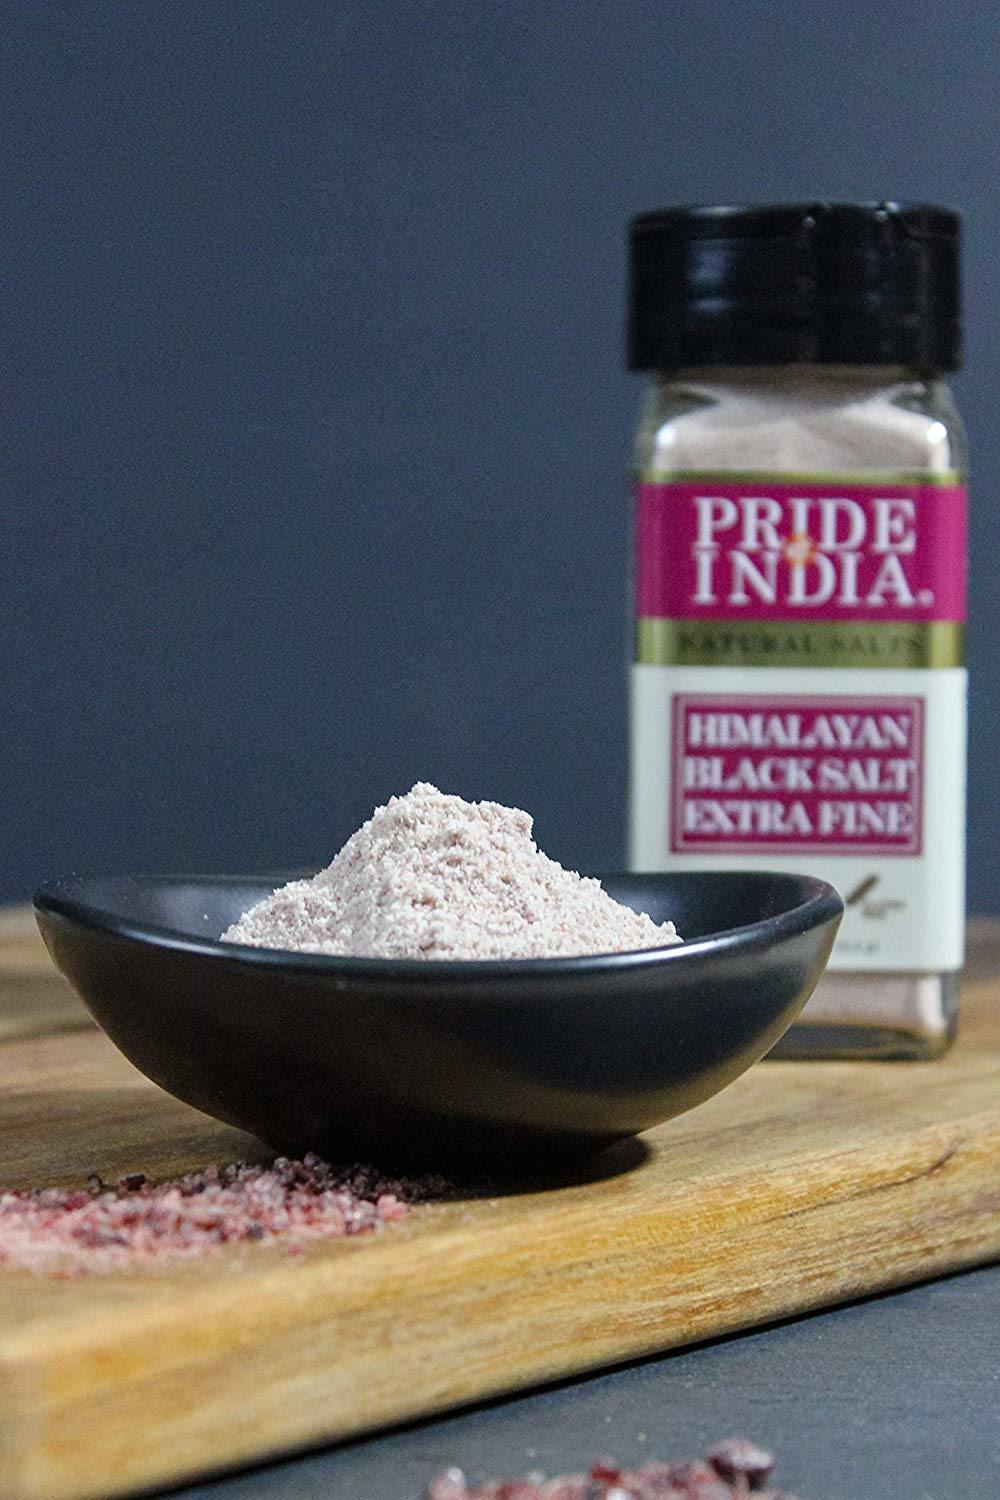 Himalayan Black Rock Salt - Extra-Fine Grind, 4.0 oz (113.4gm) Dual Sifter Jar - Kala Namak